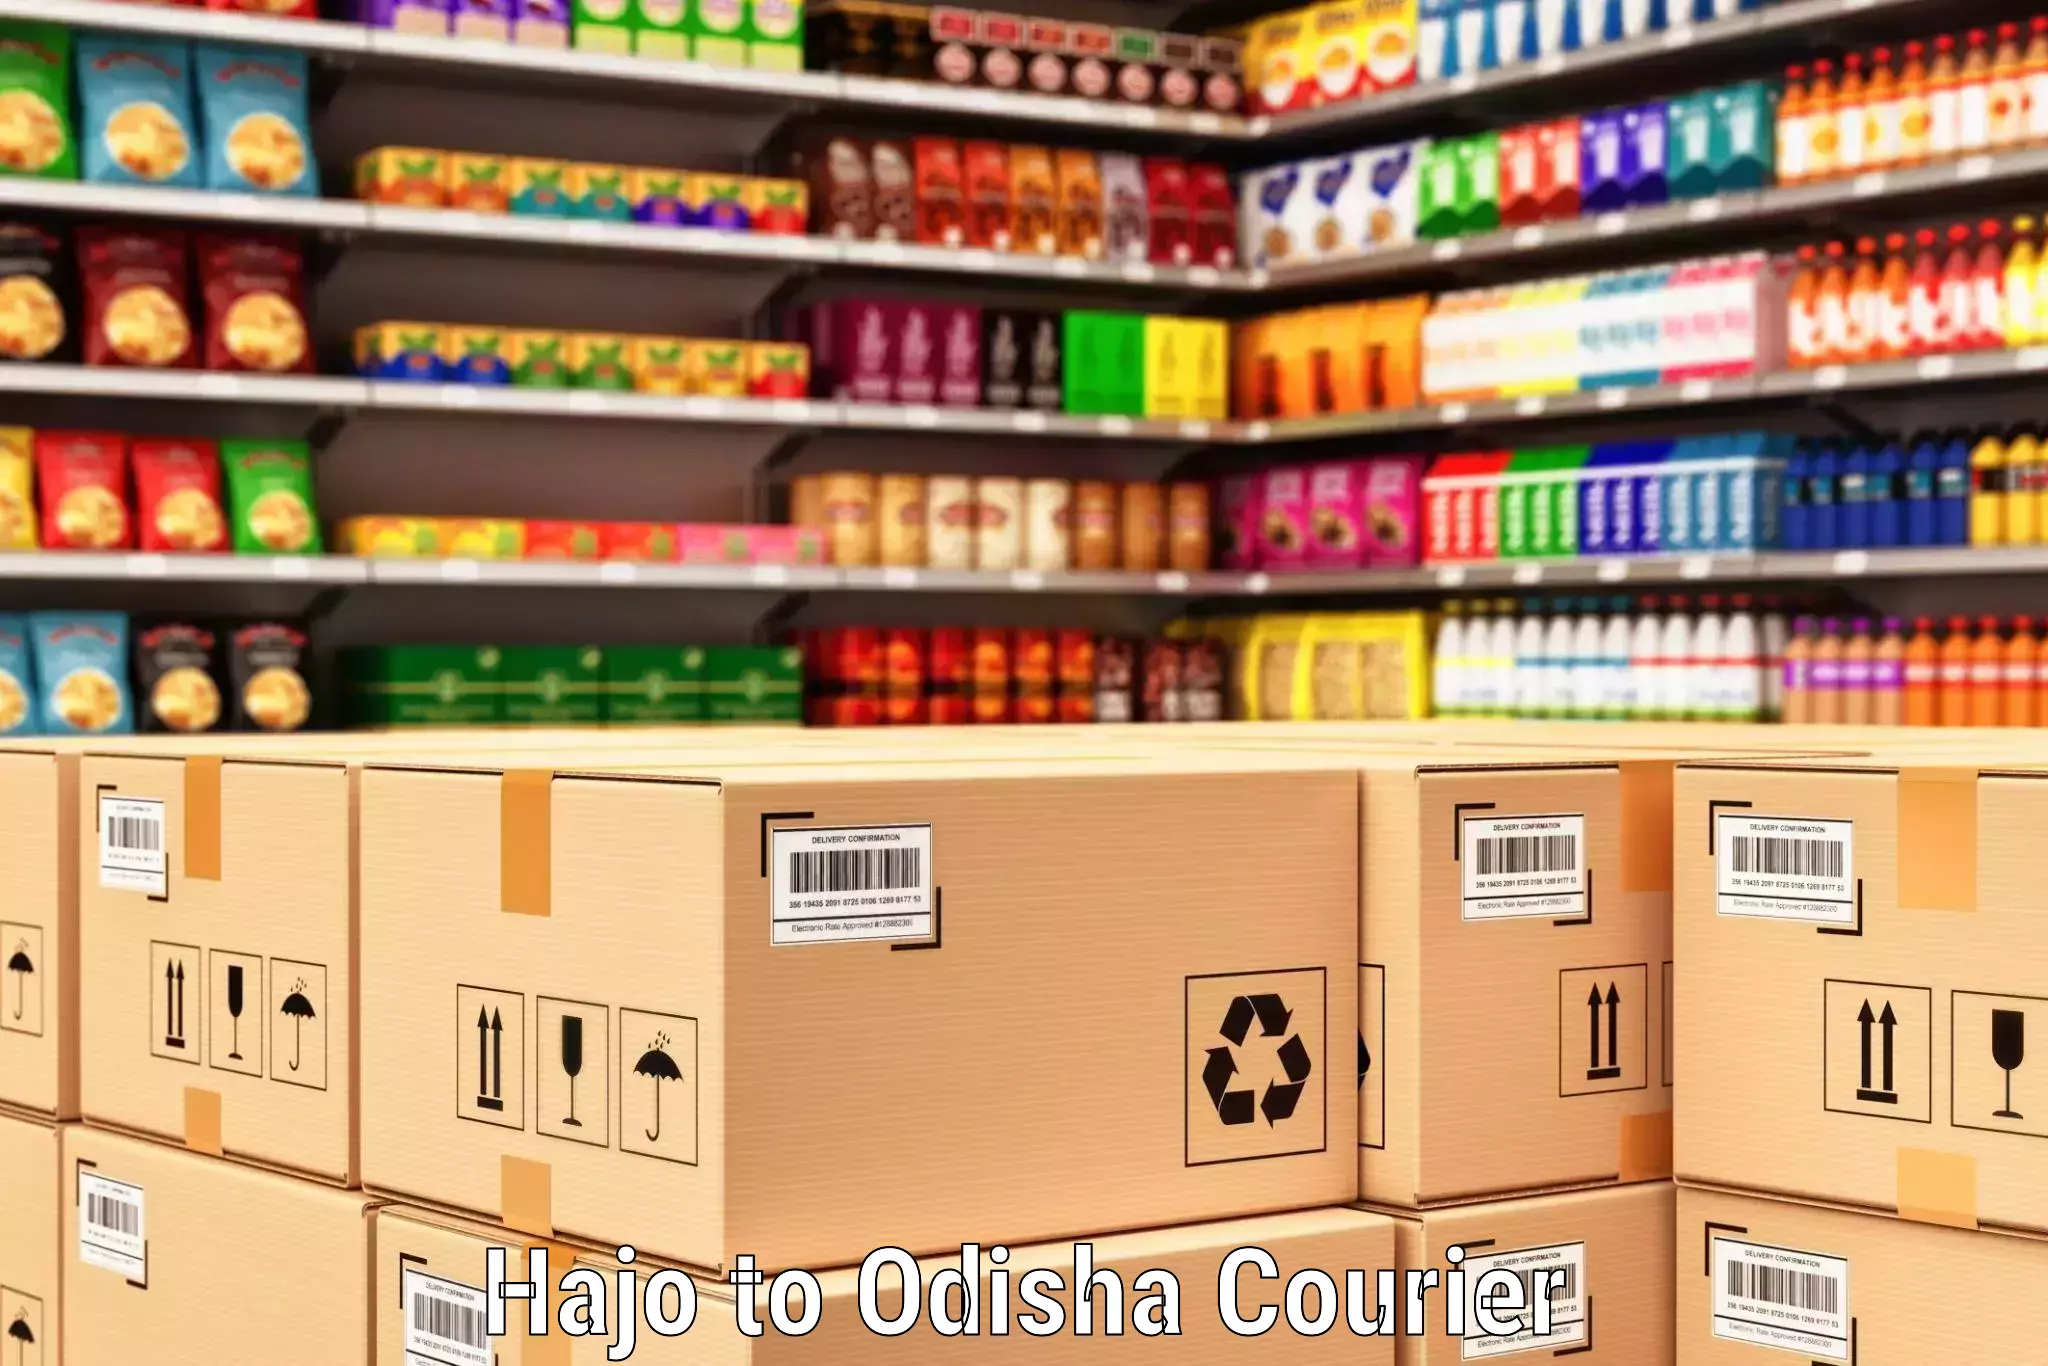 On-call courier service Hajo to Odisha